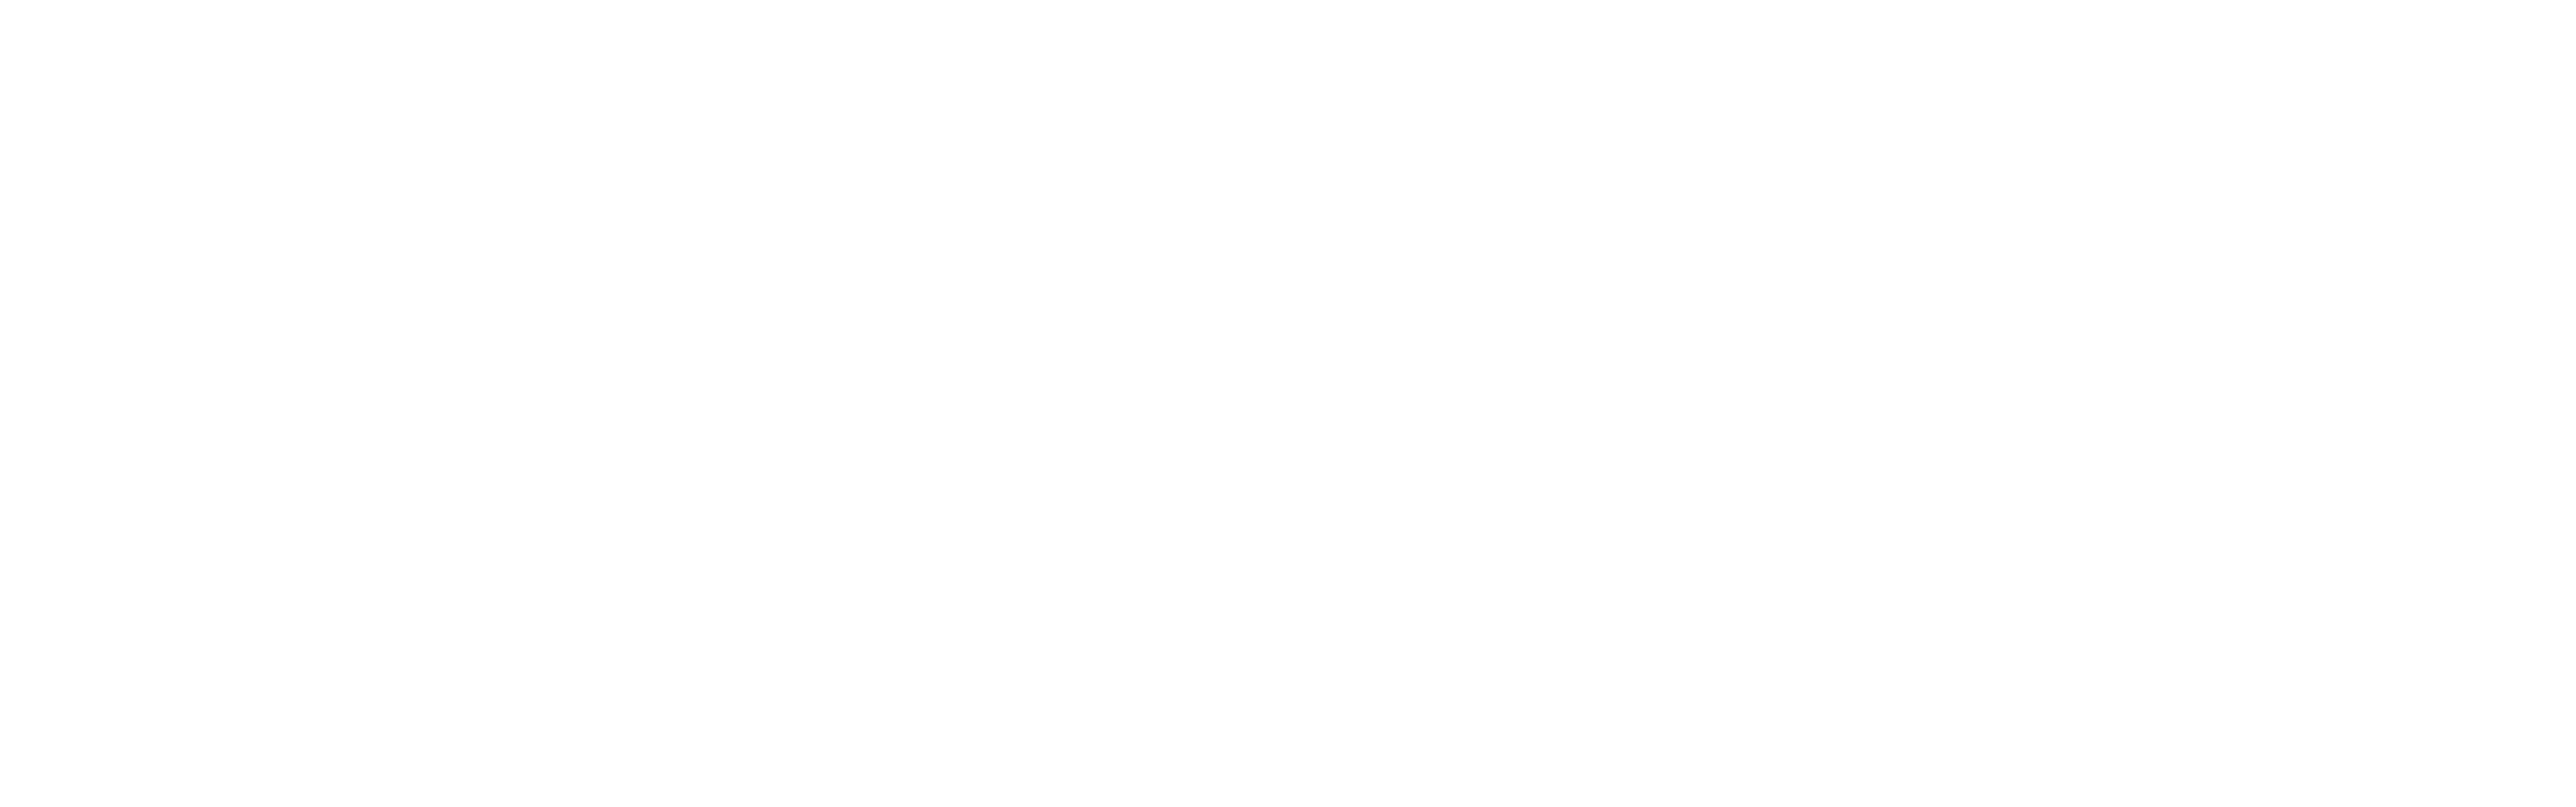 ozz-logo Барные стойки на заказ во Владивостоке по индивидуальным размерам.